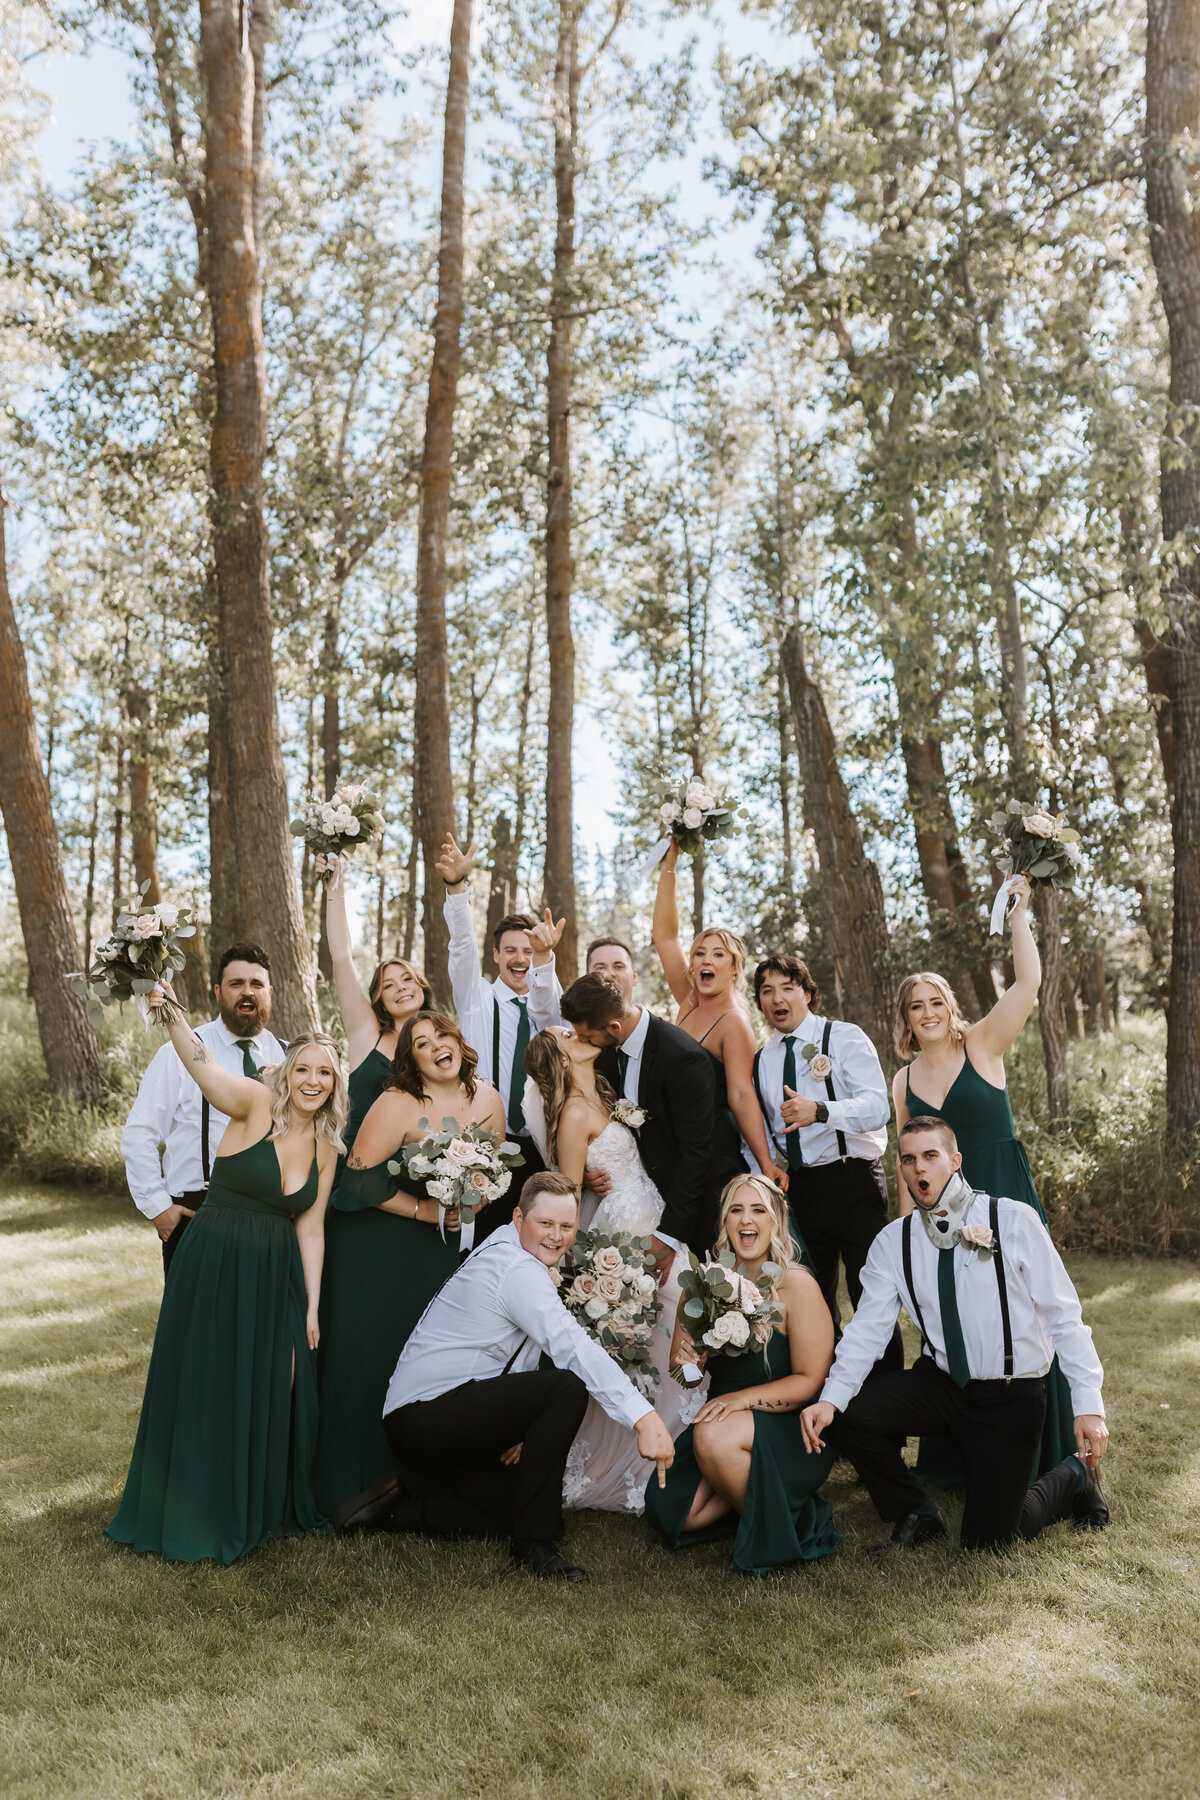 Wedding Party-Sierra Lynn Photography 1H4A5075